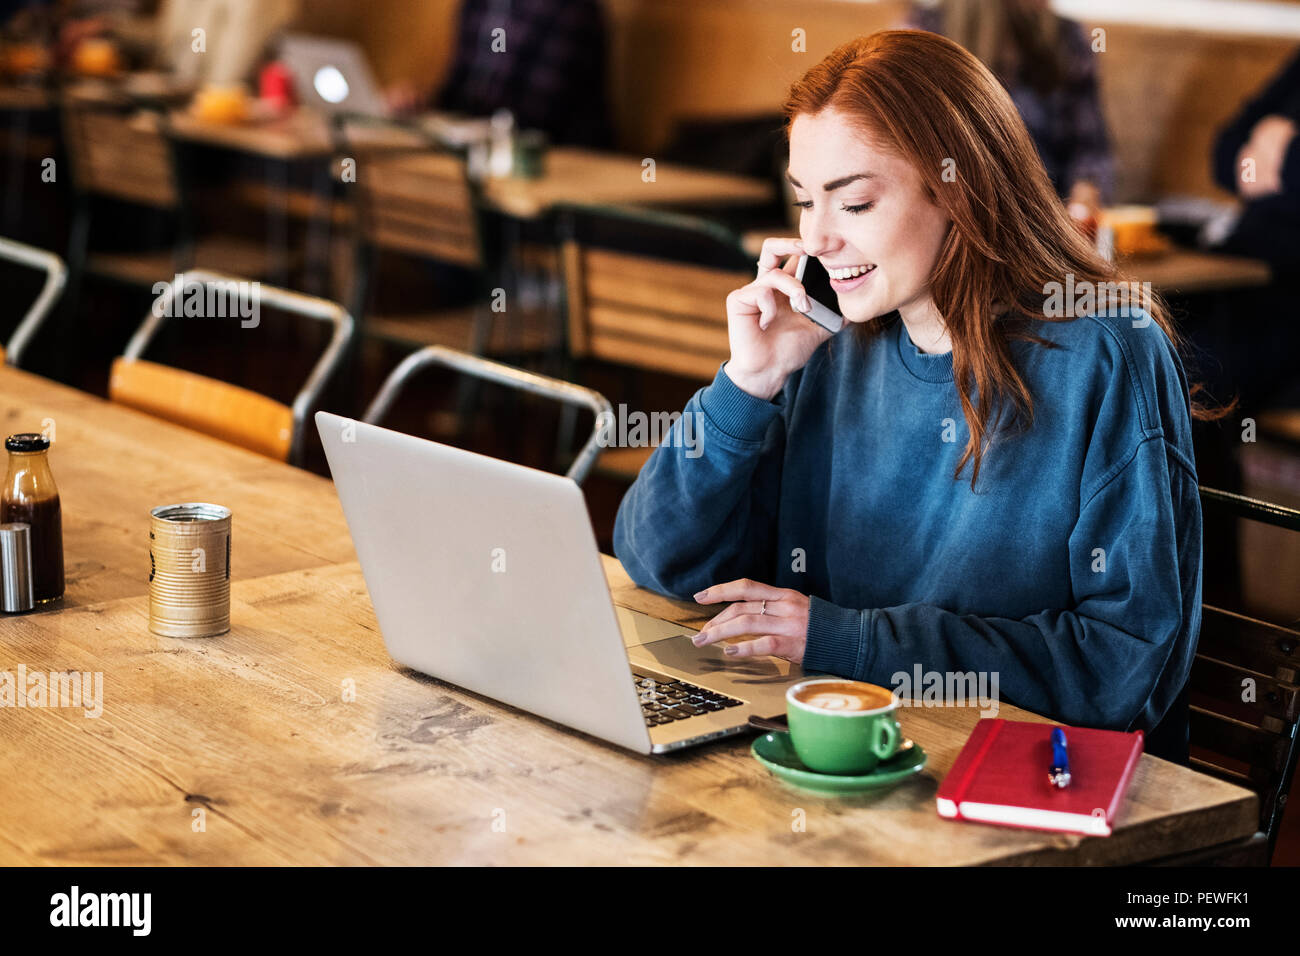 Lächelnde junge Frau mit langen roten Haaren sitzen am Tisch, Arbeiten am Laptop, mit Handy. Stockfoto